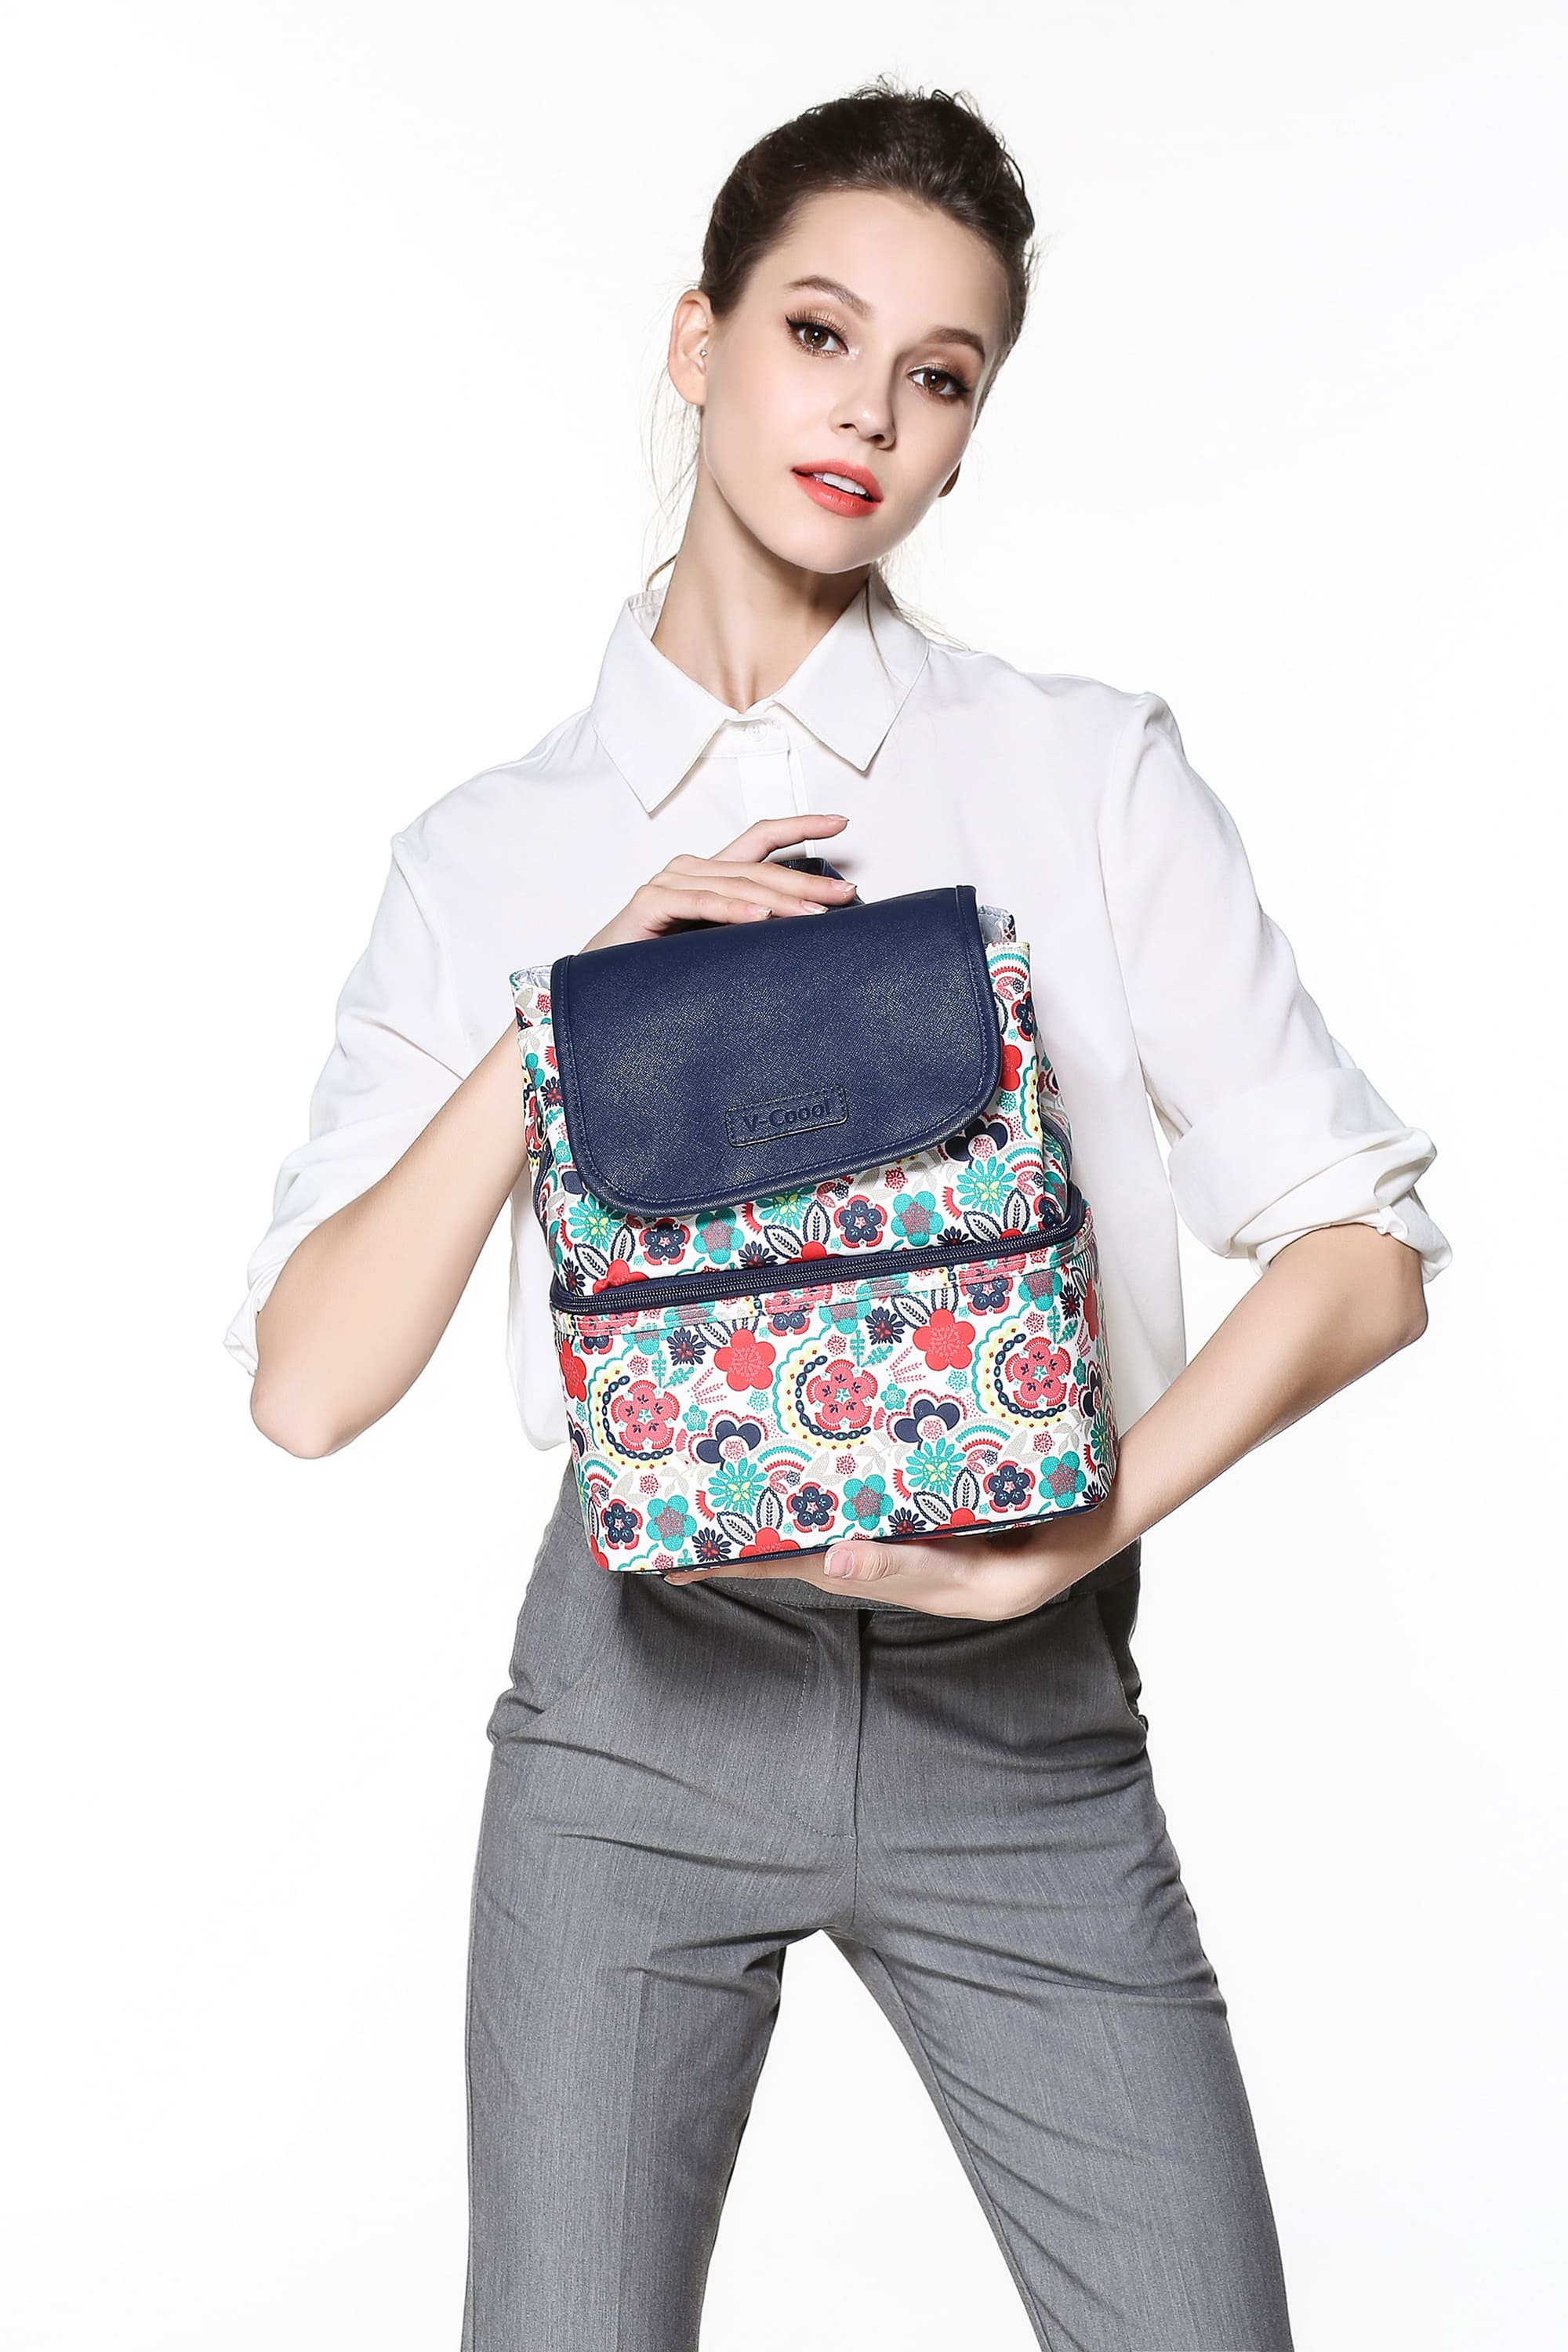 กระเป๋าเก็บความเย็น V-coool รุ่น national style cooler bag กระเป๋าเก็บนมแม่ กระเป๋าใส่ขวดนม กระเป๋าเก็บอุณหภูมิ v-coo